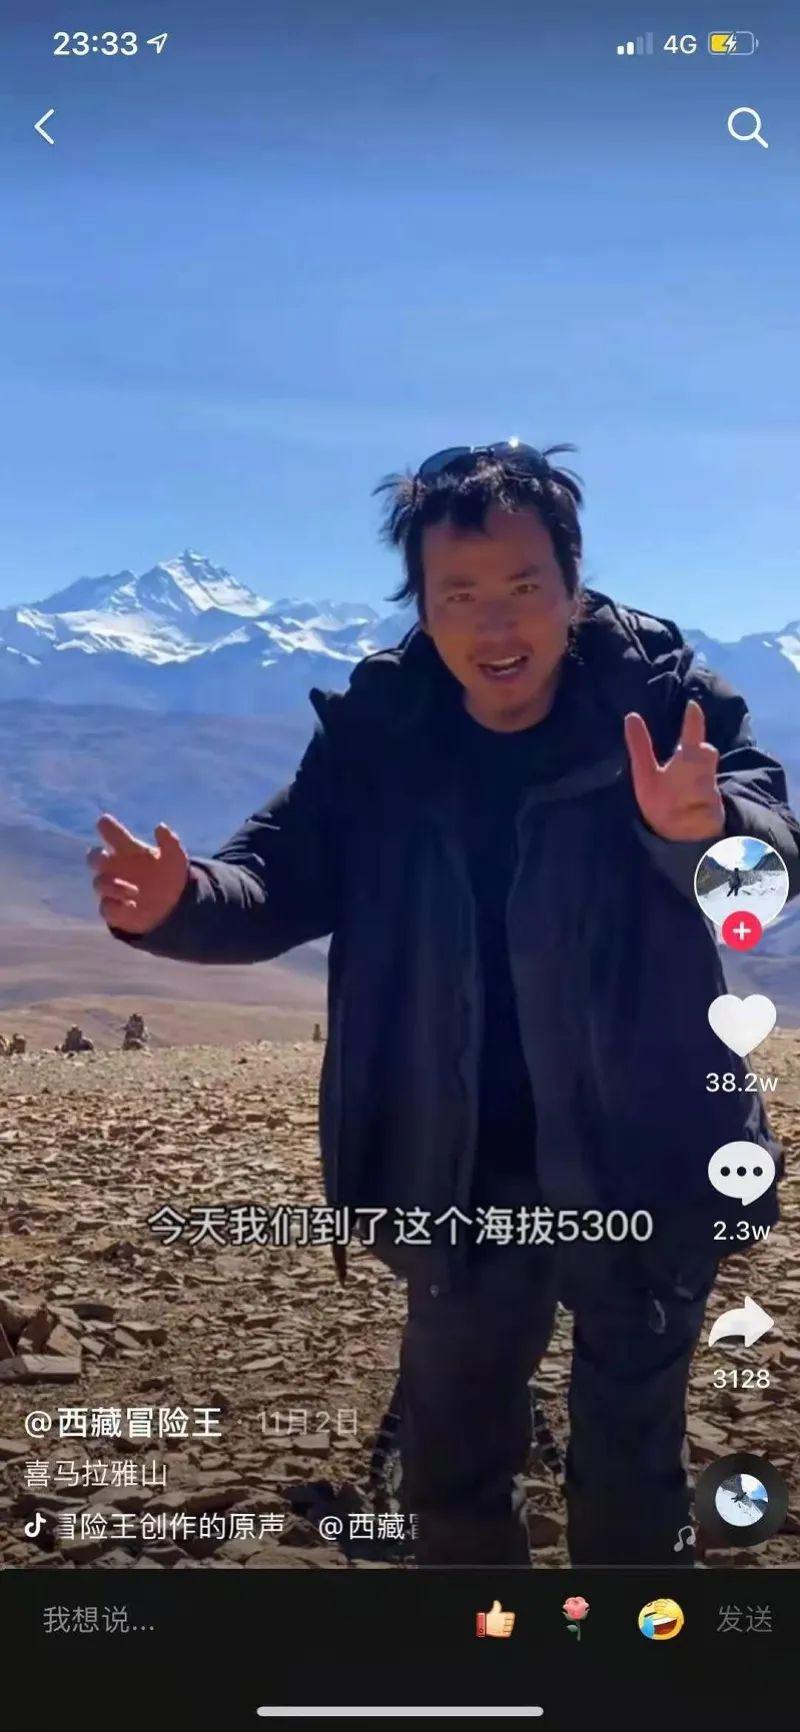 “西藏冒险王”最后坠入冰瀑画面曝光！同行人回应质疑